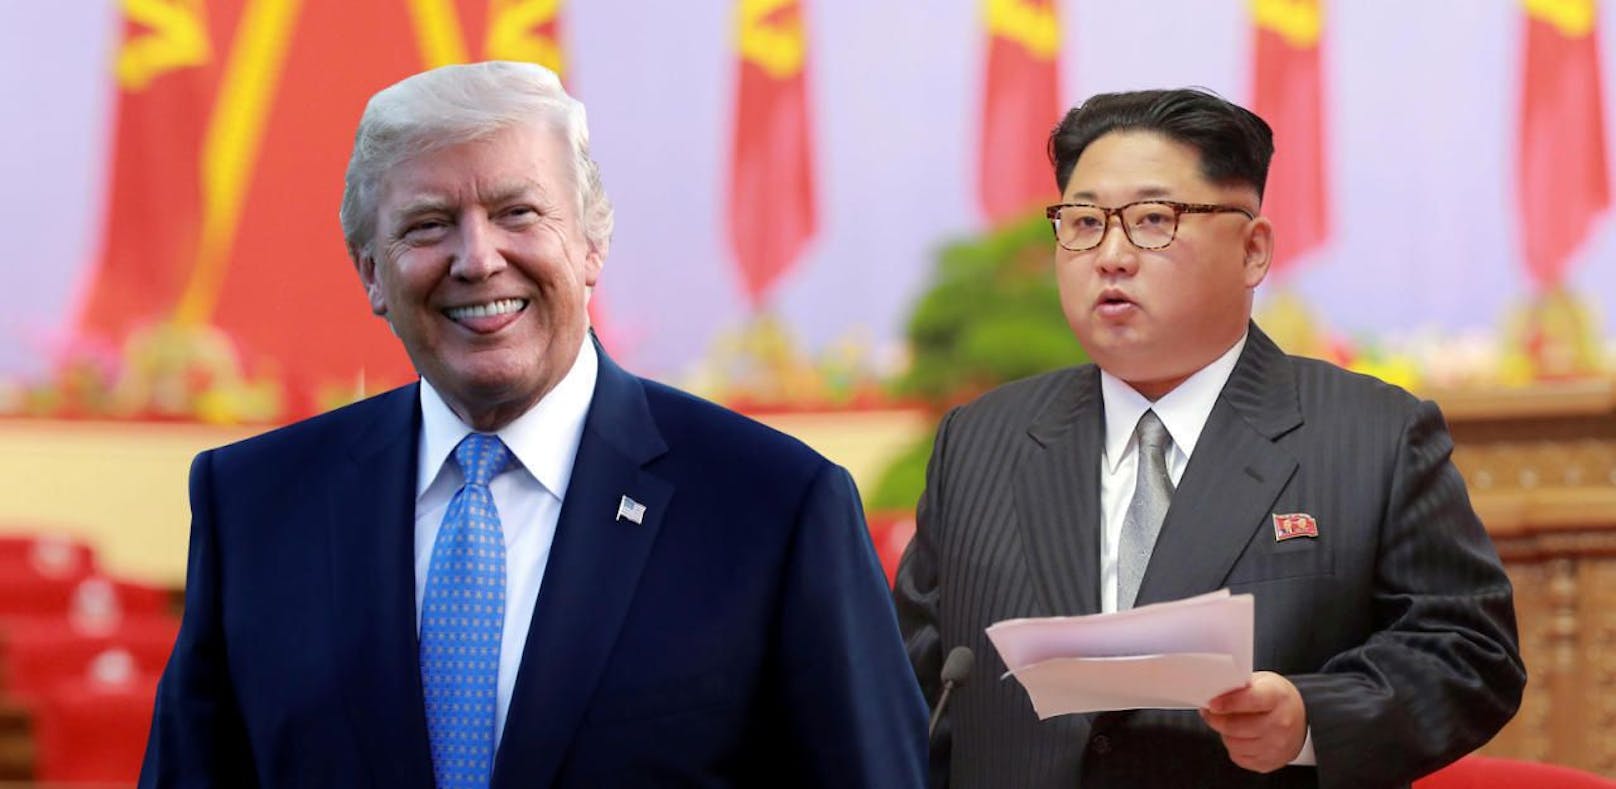 Die Beziehung zwischen den USA und Nordkorea ist gespannt.